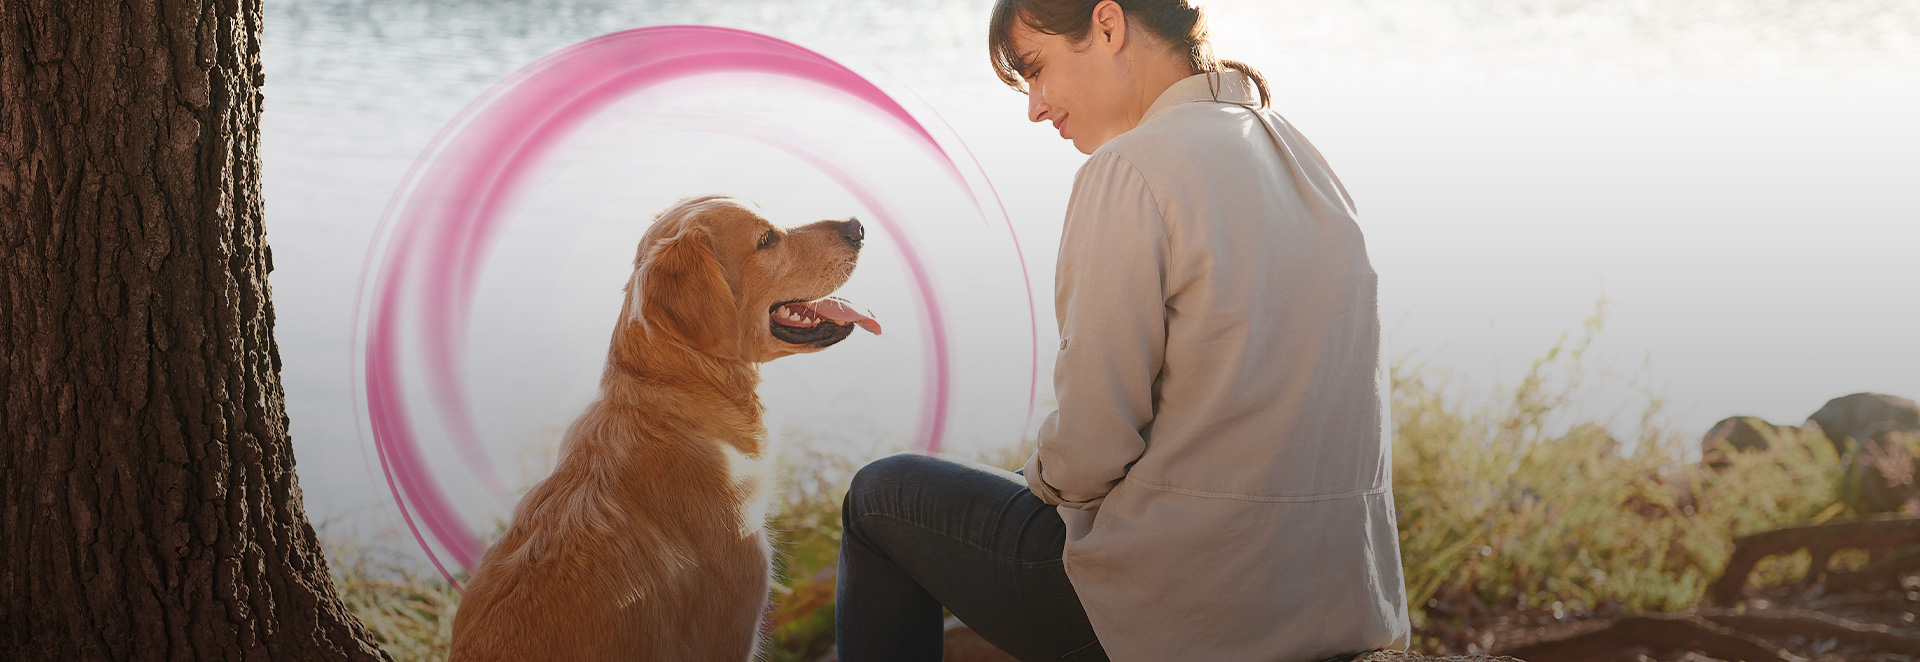 Frontline Tri-Act, das Zeckenmittel für Hunde gegen Zecken, Flöhe und Mücken, die Leishmaniose übertragen können.